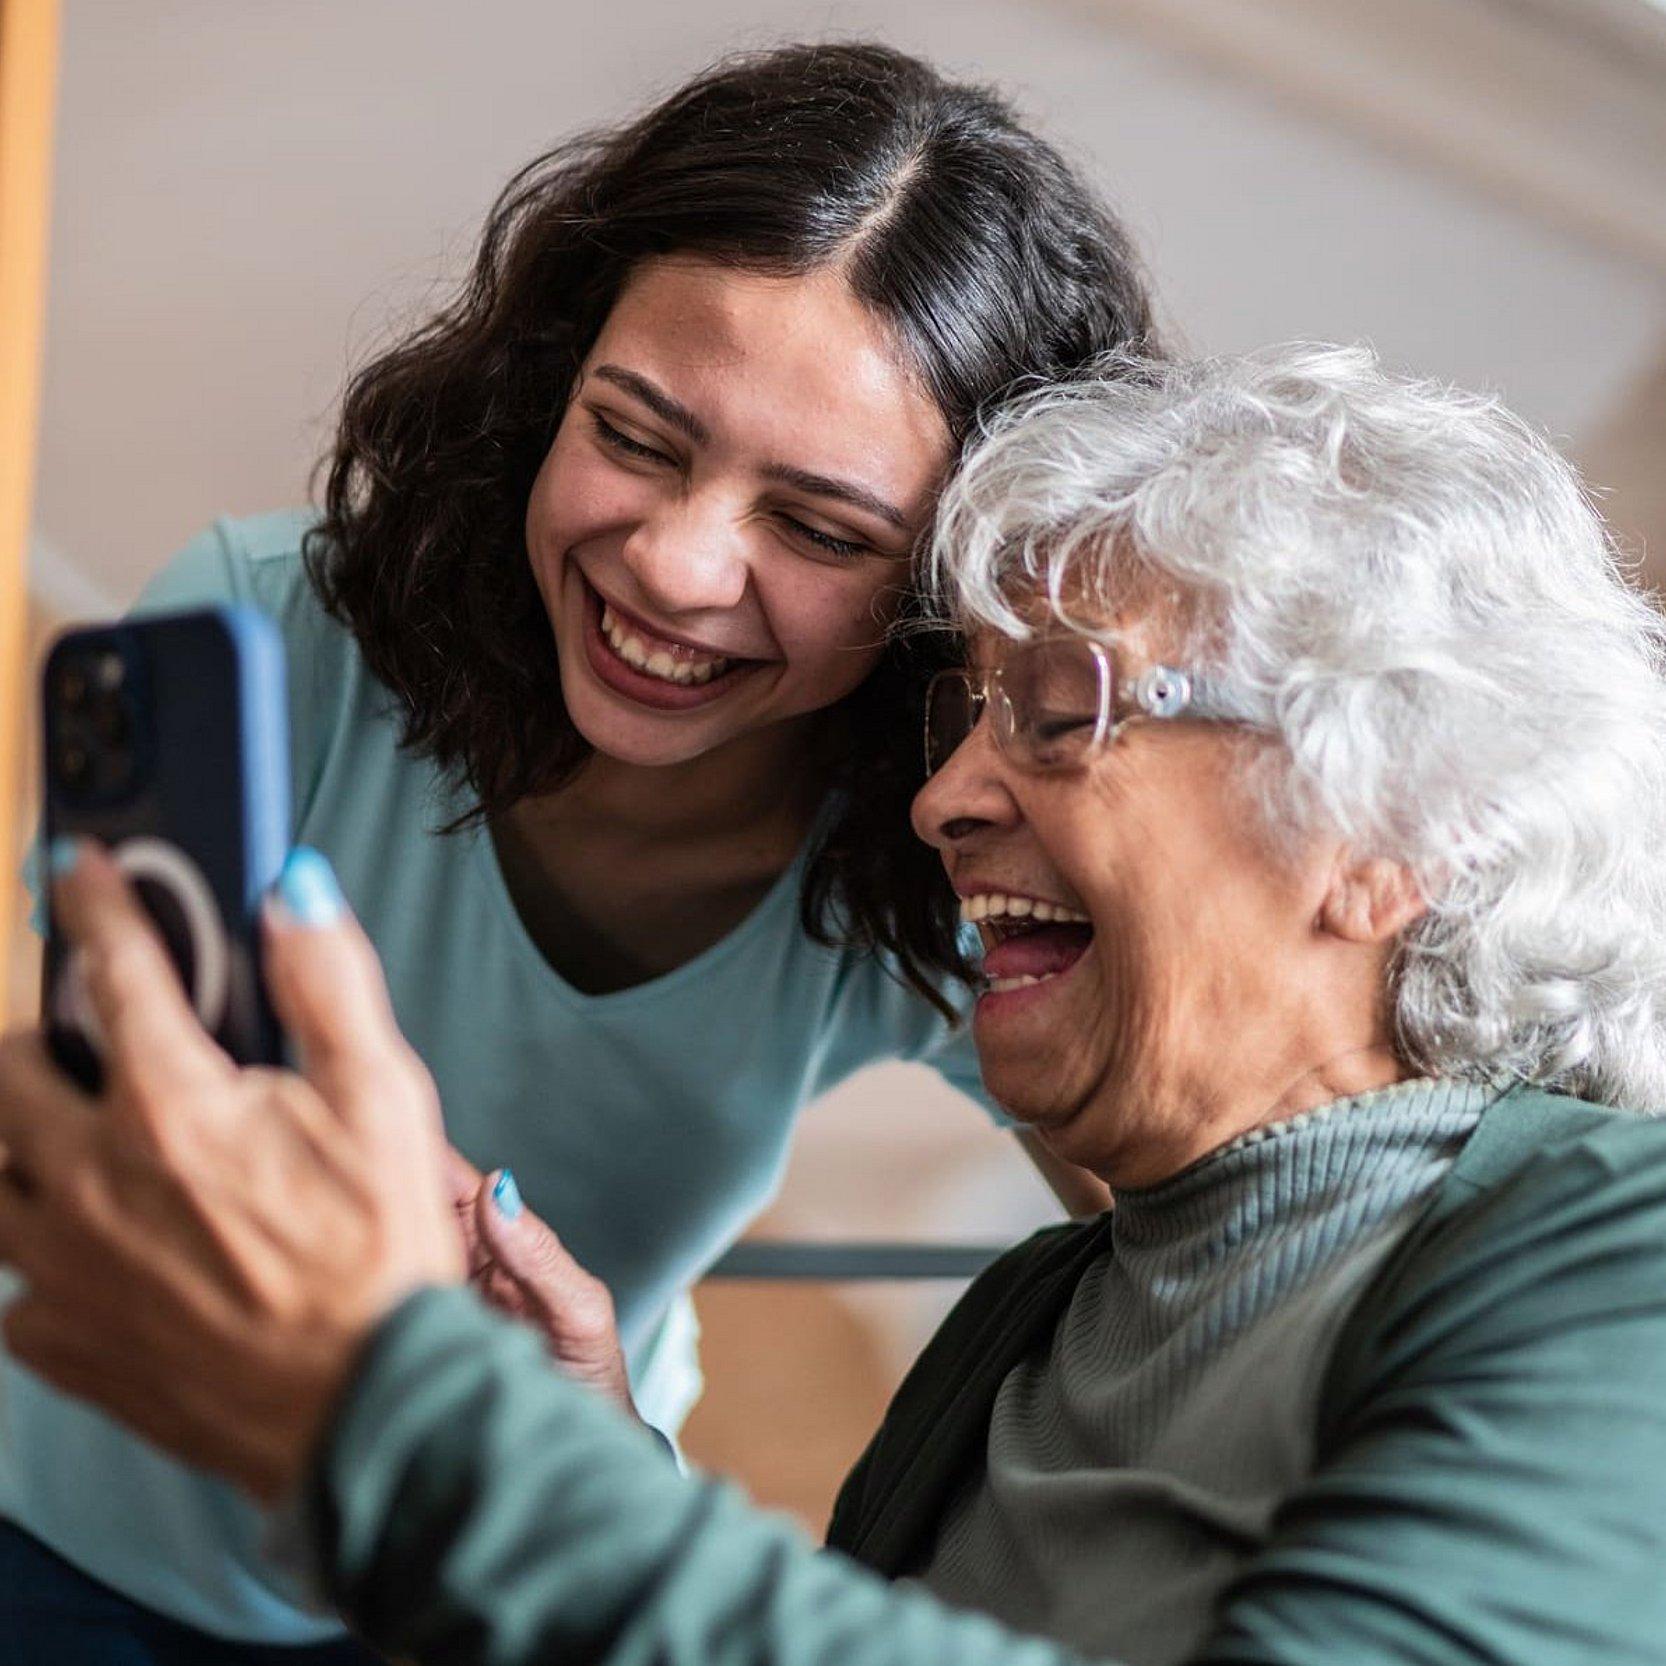 Eine ältere Frau sitzt und hält ein Smartphone in der Hand, eine junge Frau beugt sich über sie und schaut auch in das Smartphone, beide lächeln und sehen sehr freundlich aus.